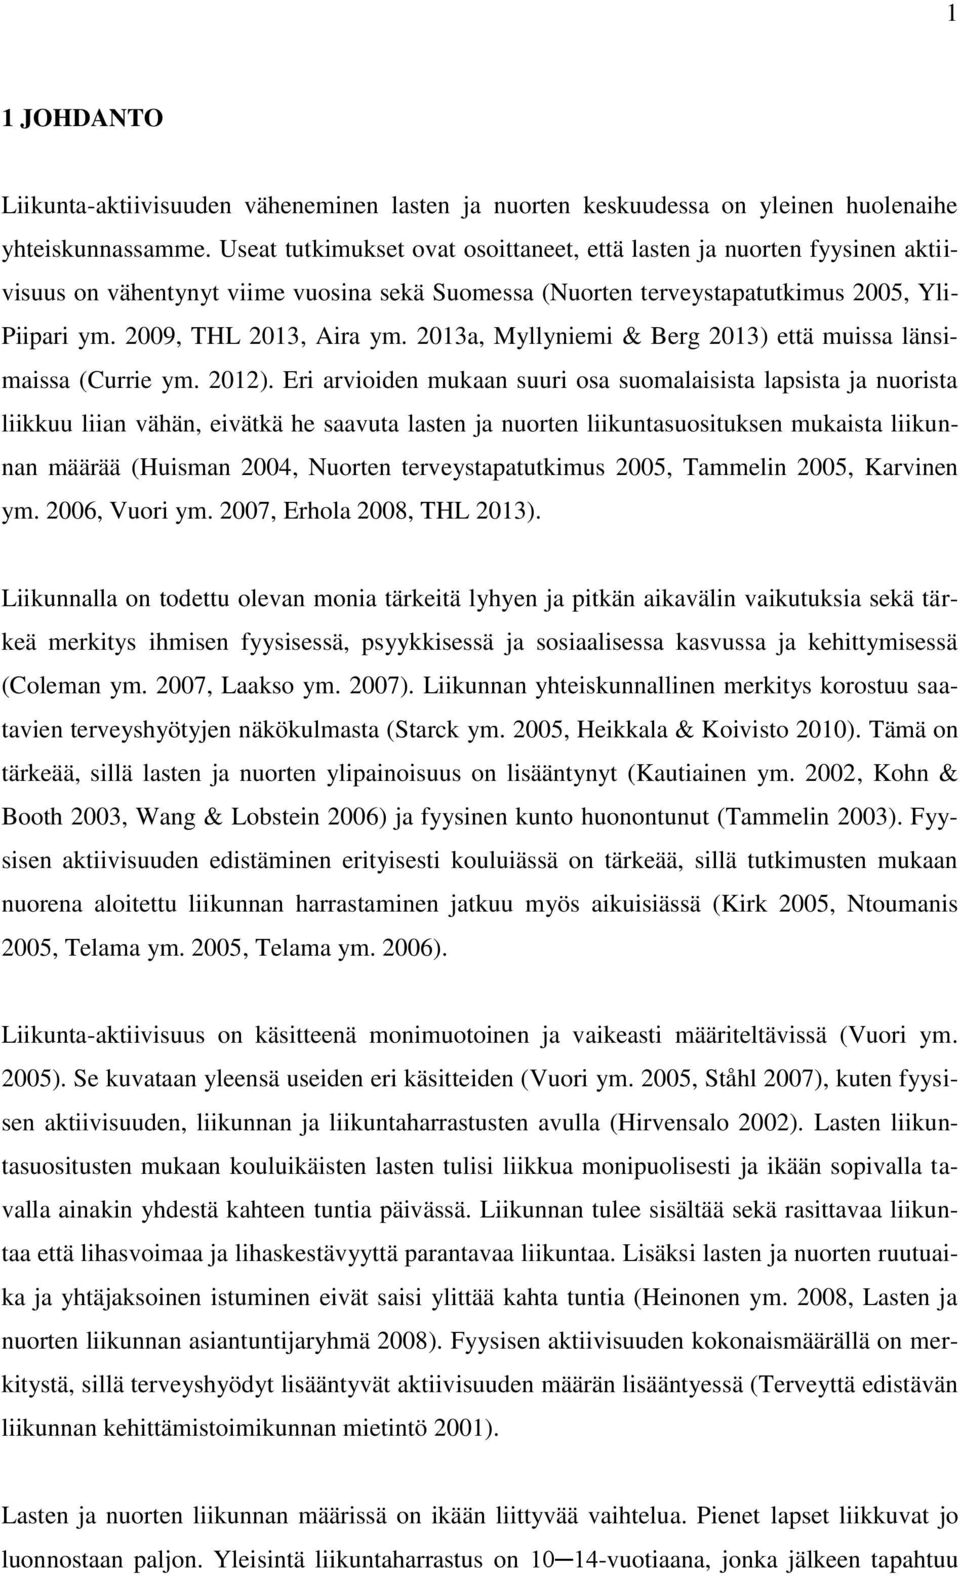 2013a, Myllyniemi & Berg 2013) että muissa länsimaissa (Currie ym. 2012).